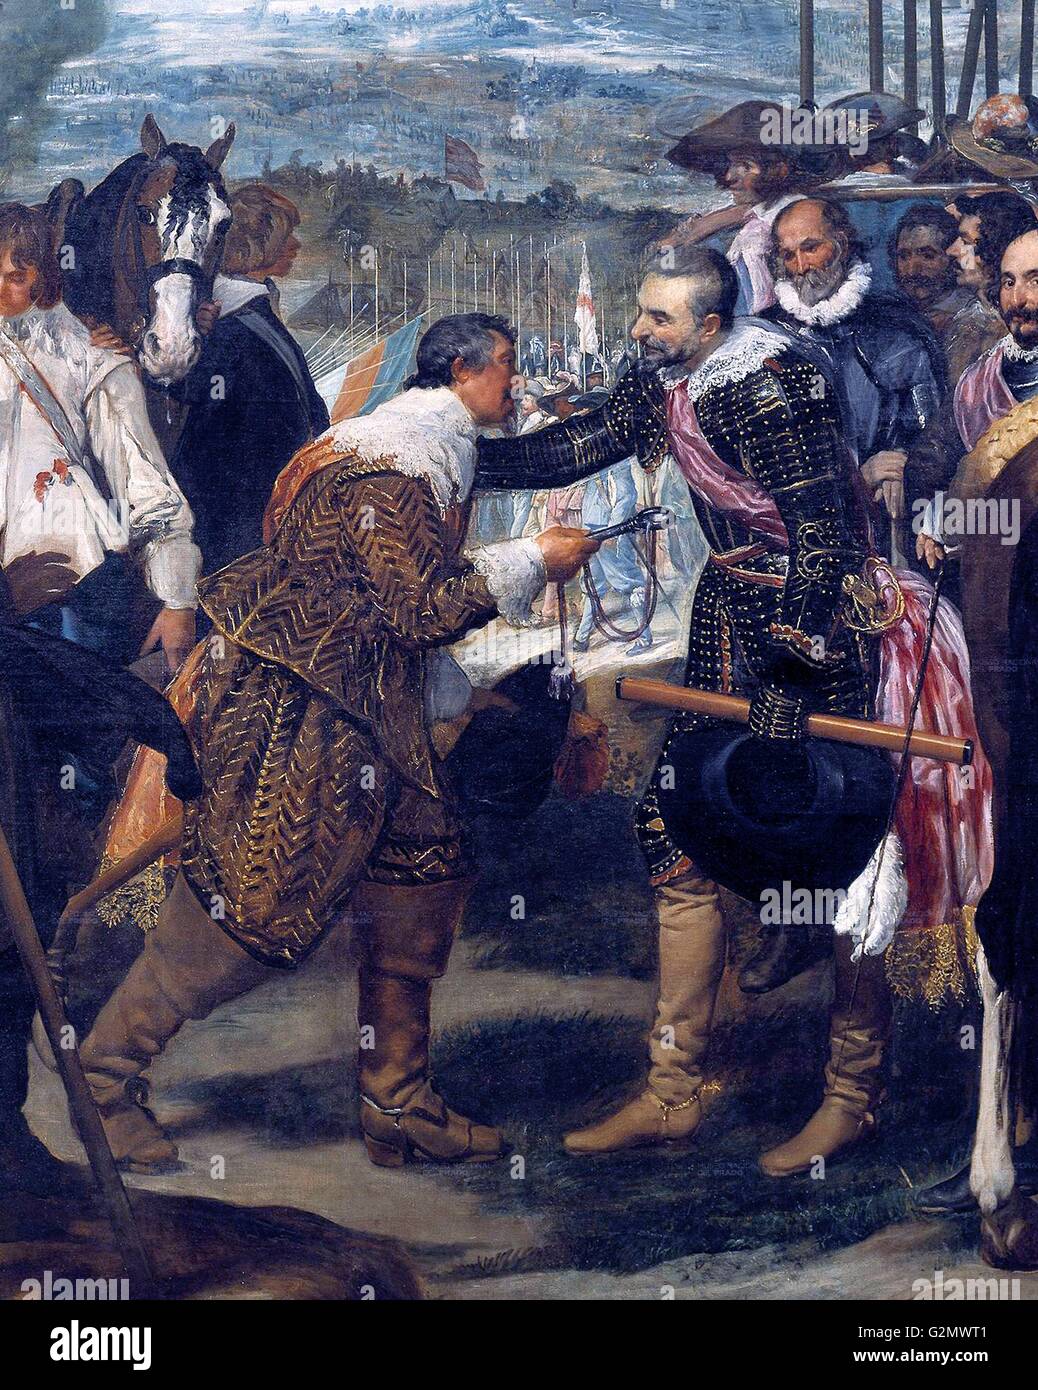 Dettagli dalla rinuncia di Breda, dallo spagnolo della Golden Age pittore Diego Velázquez. Essa è stata completata durante gli anni 1634-35, ispirato da Velázquez in visita in Italia con Ambrogio Spinola, il generale genovese che ha vinto la Breda il 5 giugno 1625 Foto Stock